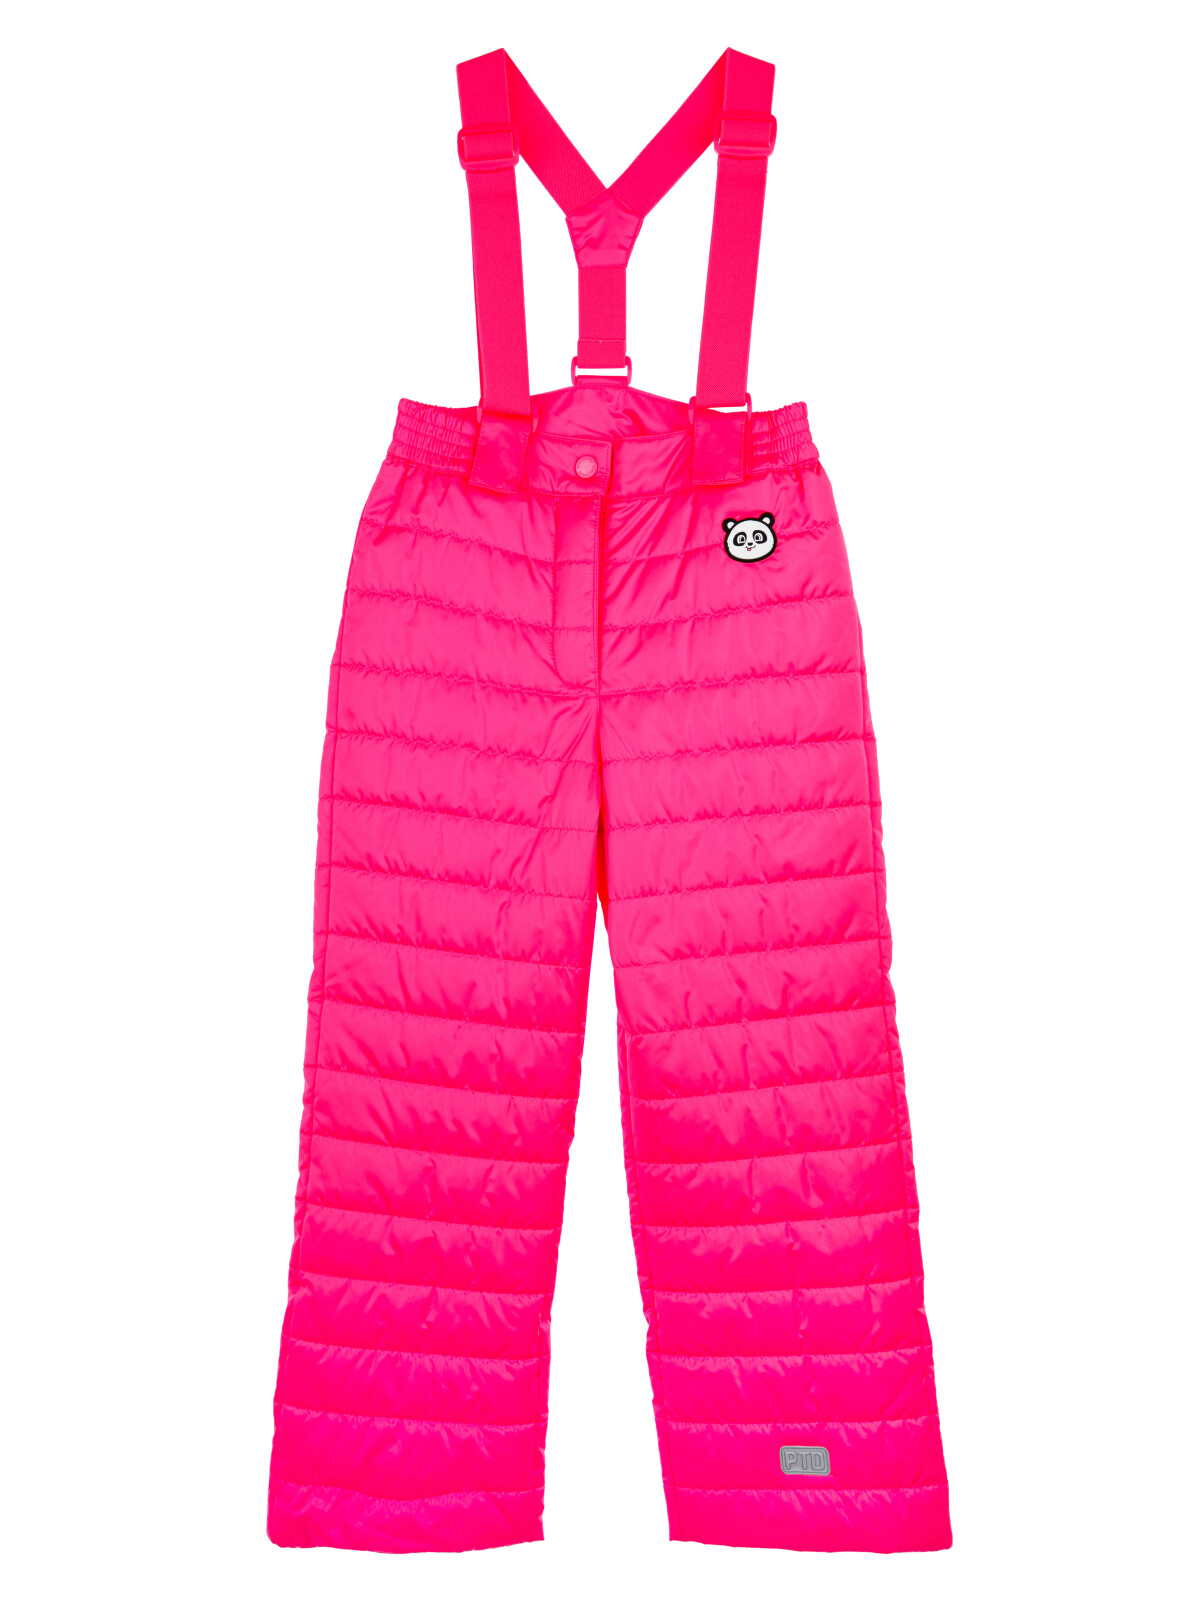 брюки playtoday kids для девочки, розовые